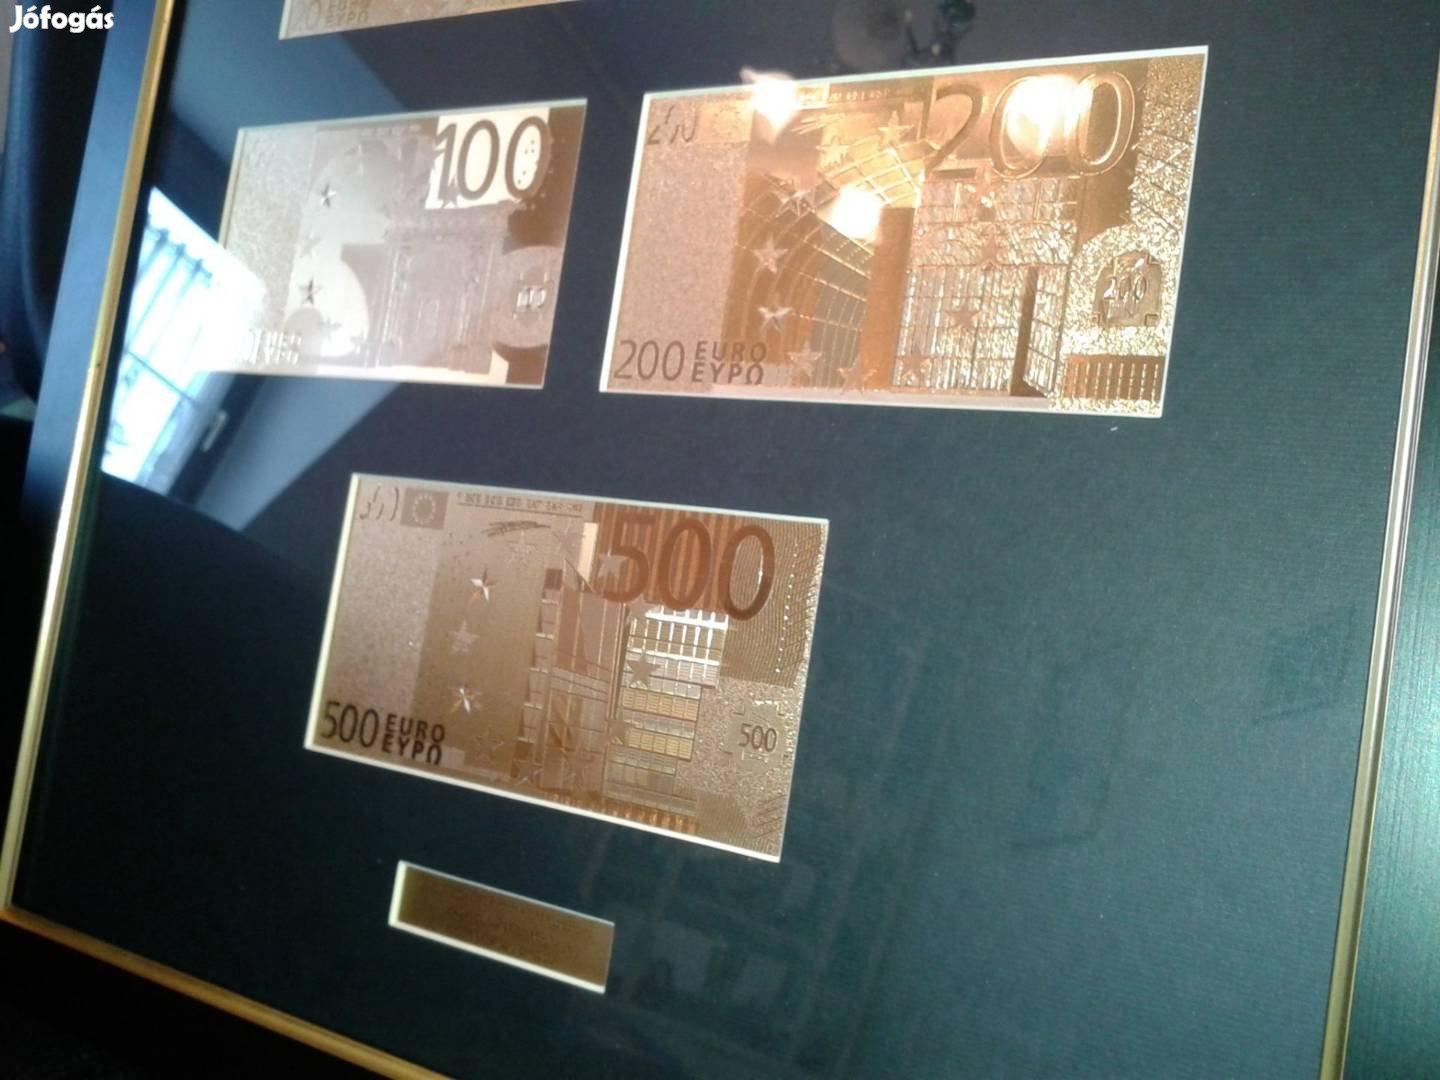 Eladó 24kt Arany 5-500 Euro Bankjegy Luxus Full Szett,Exkluzív Ajándék